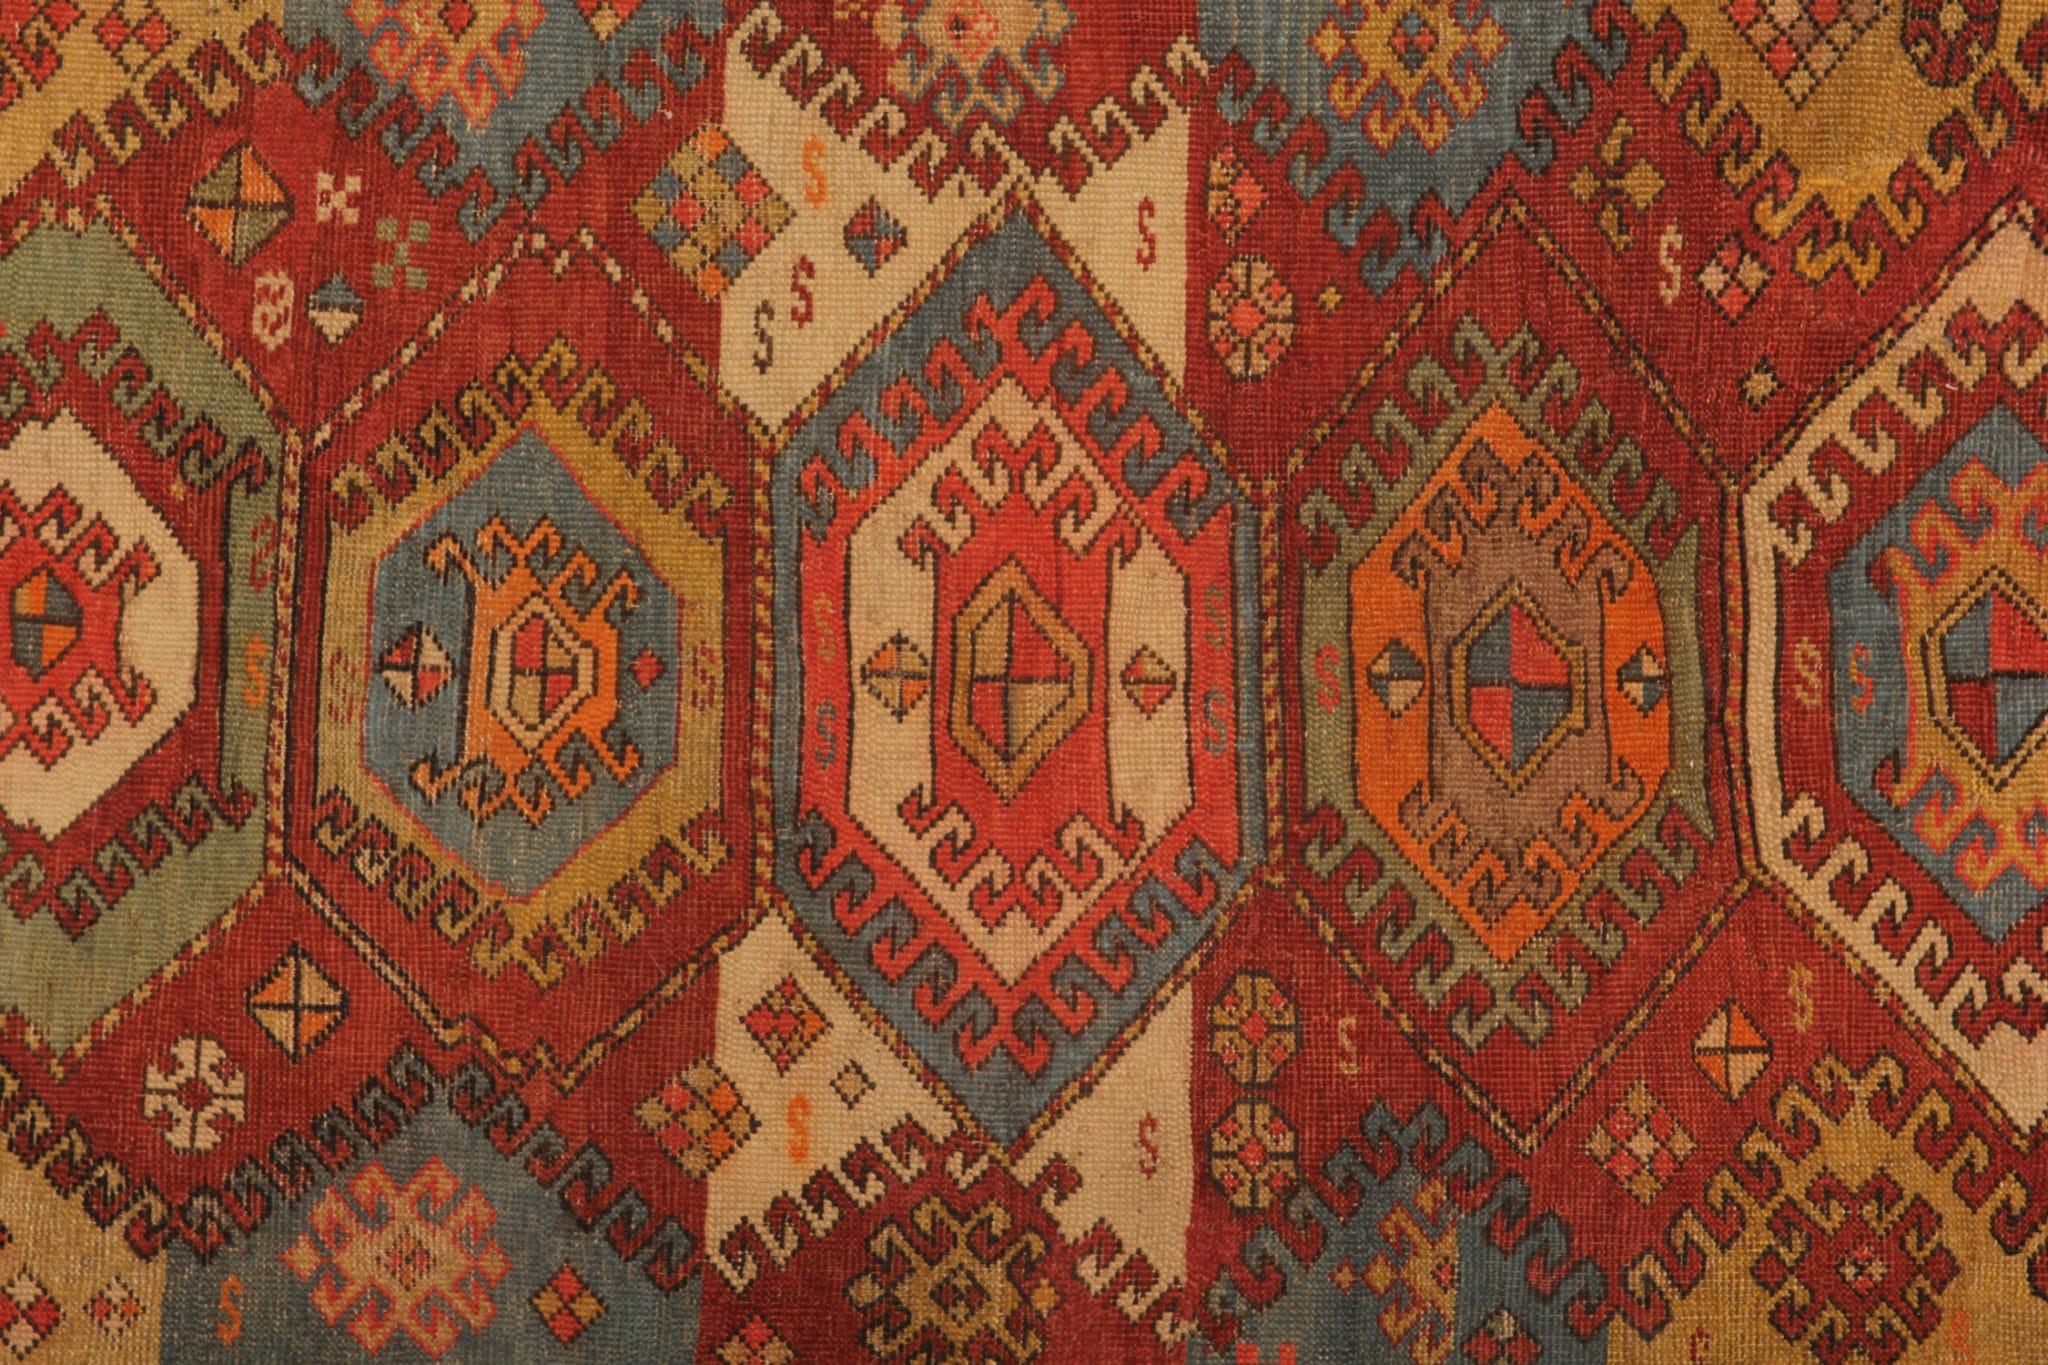 Lassen Sie sich von der zeitlosen Anziehungskraft unseres seltenen antiken, handgefertigten, geometrischen roten Teppichs verzaubern, der von Geschichte und kulturellem Reichtum durchdrungen ist. Dieser exquisite Teppich aus den geschätzten